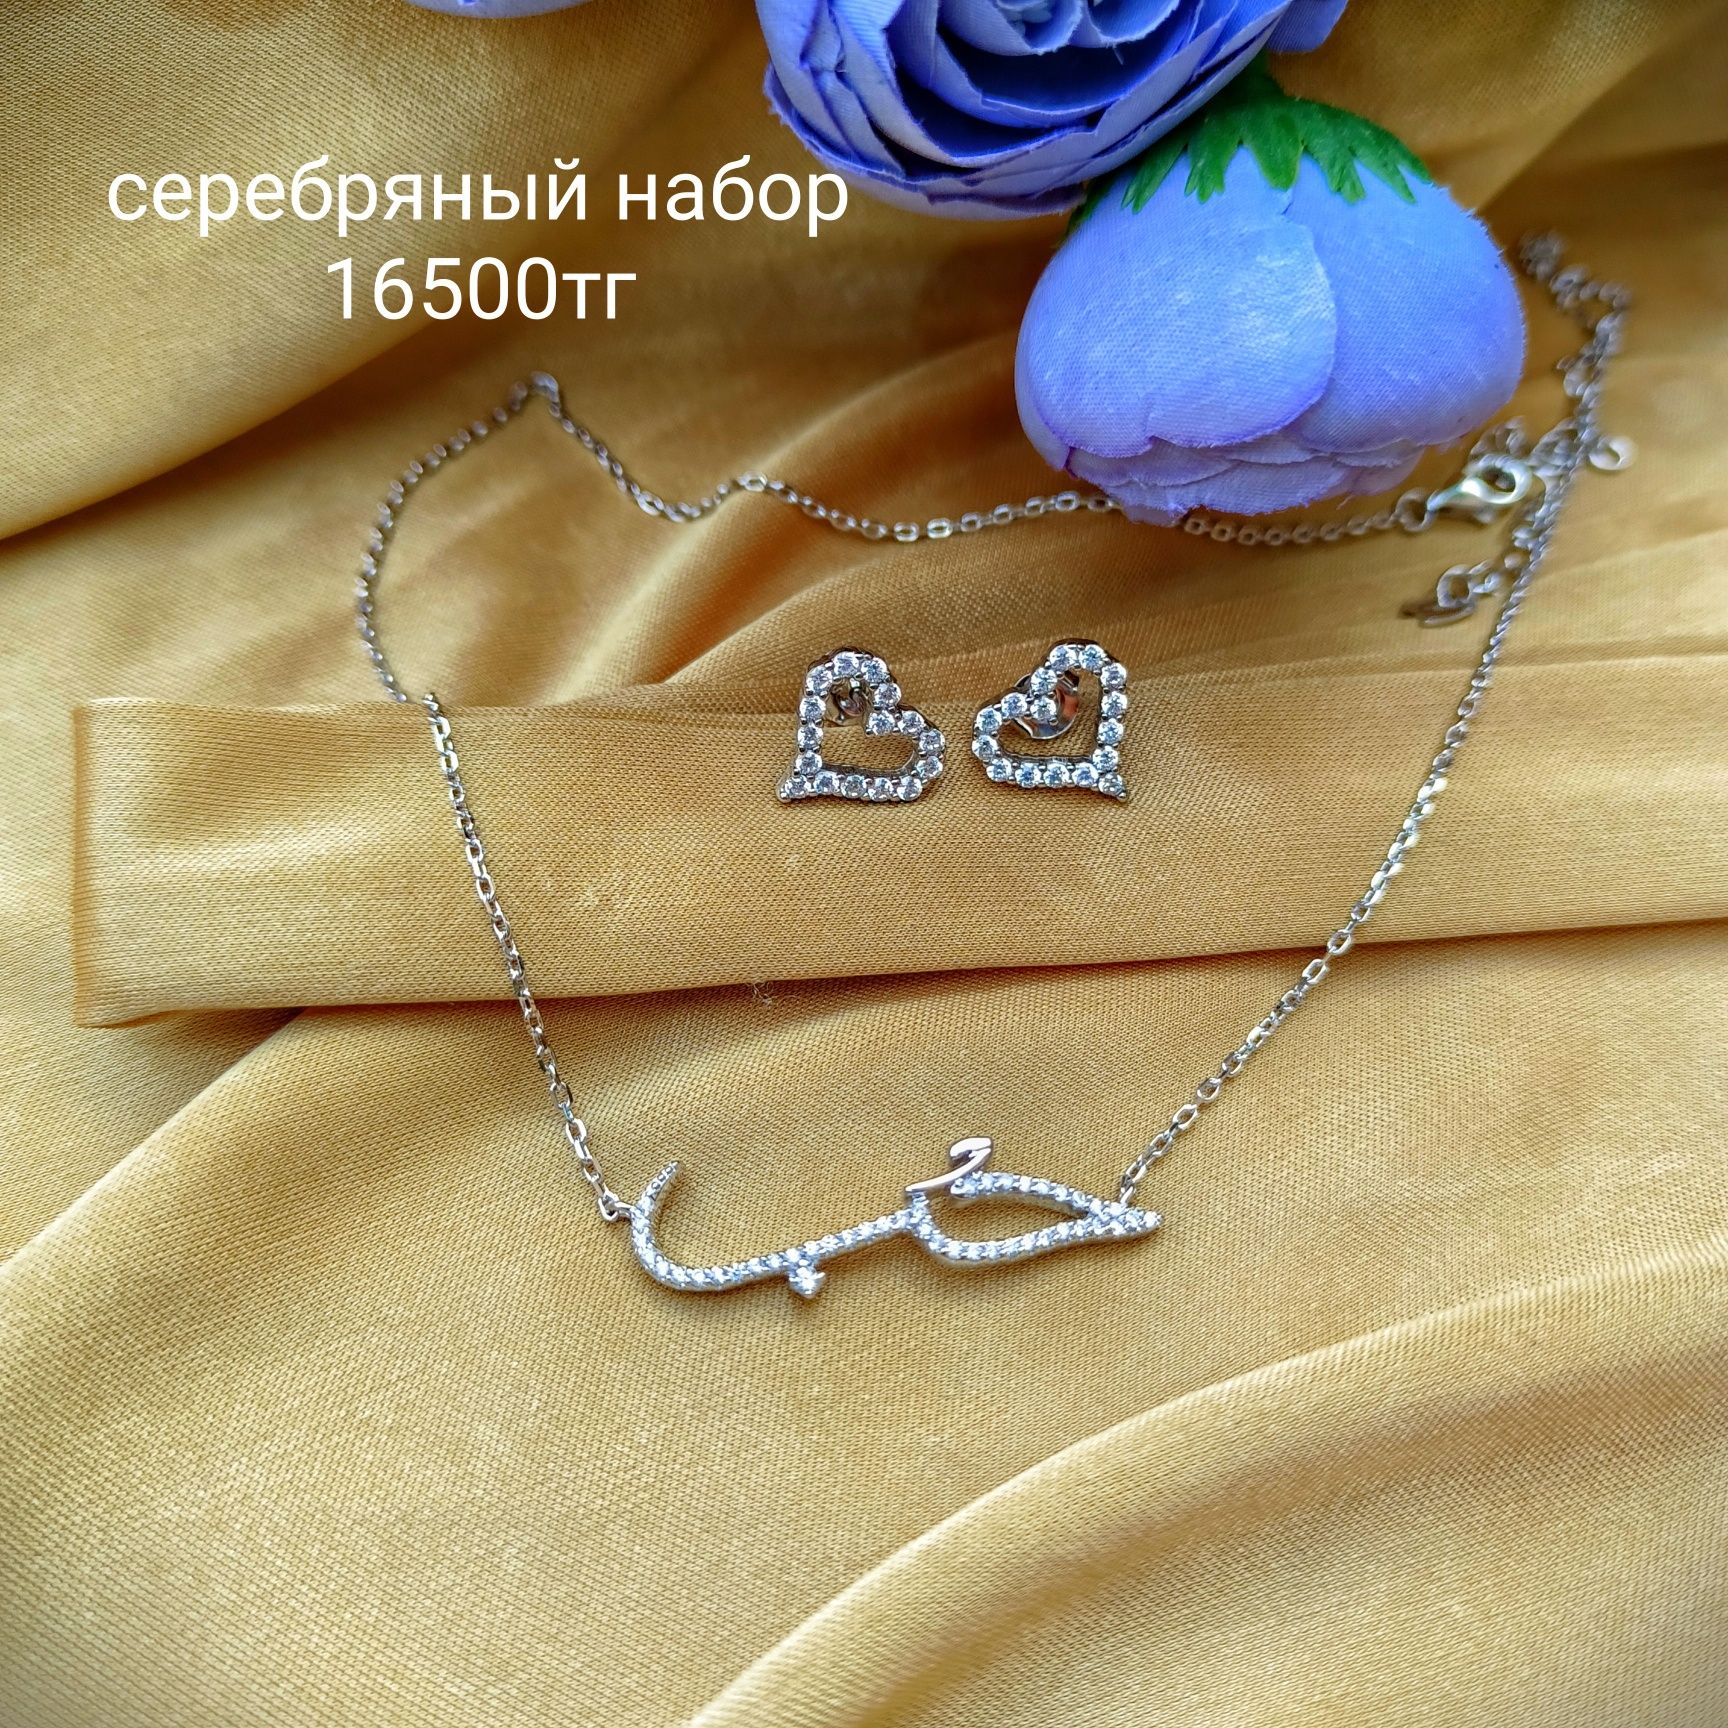 Подарки для женщин, серебряный набор кольцо и серьги